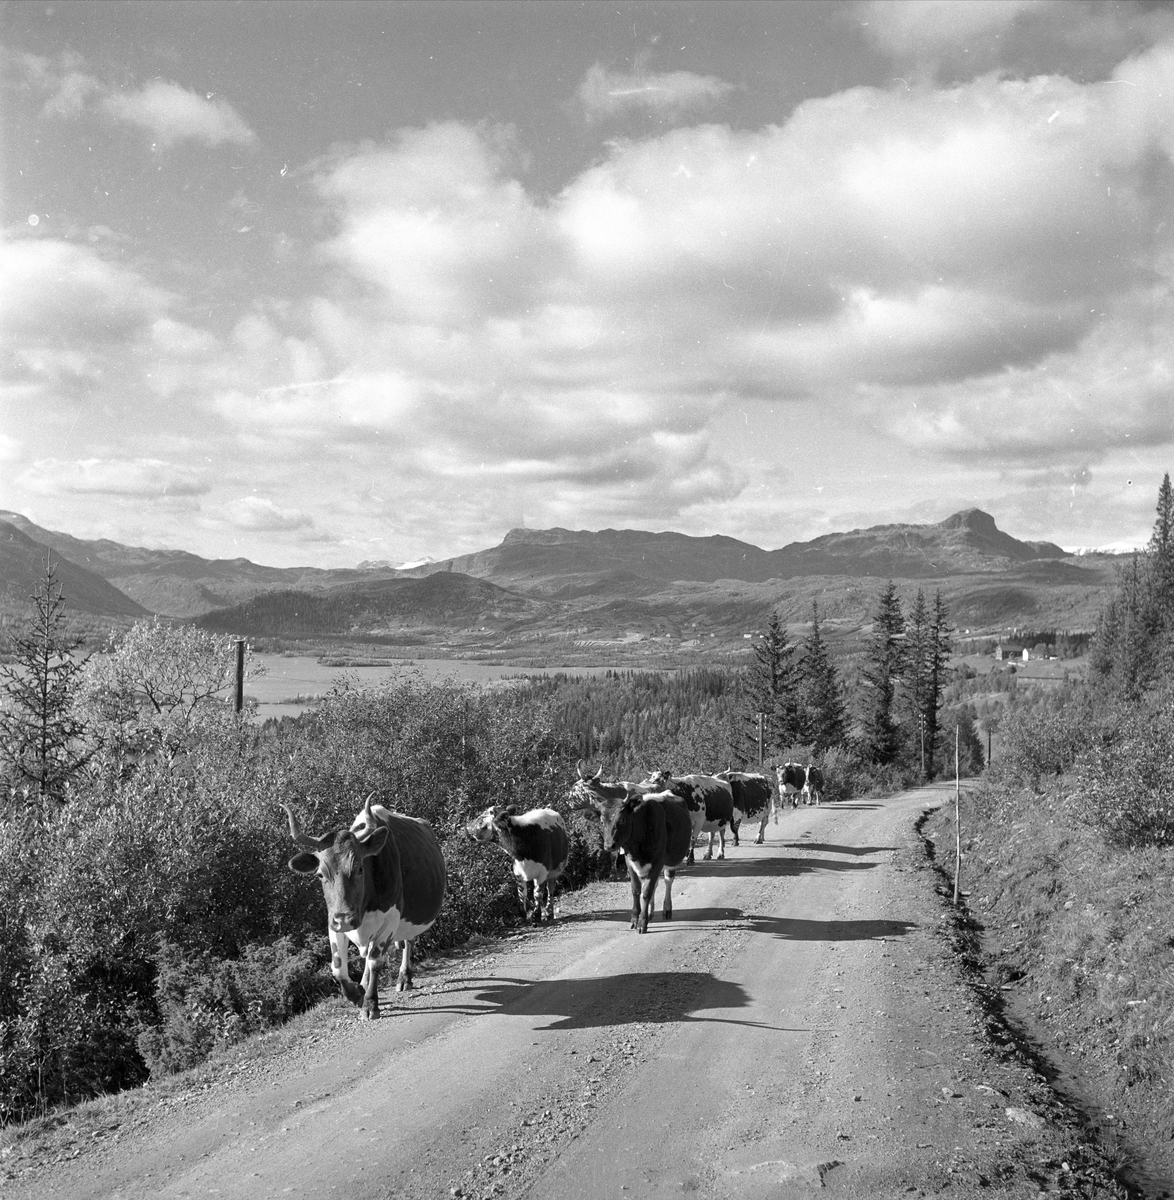 Øyangen, Øystre Slidre, Oppland, september 1957. Lykkja og Beito ved Øyangen. Landskap med kuer på vei.